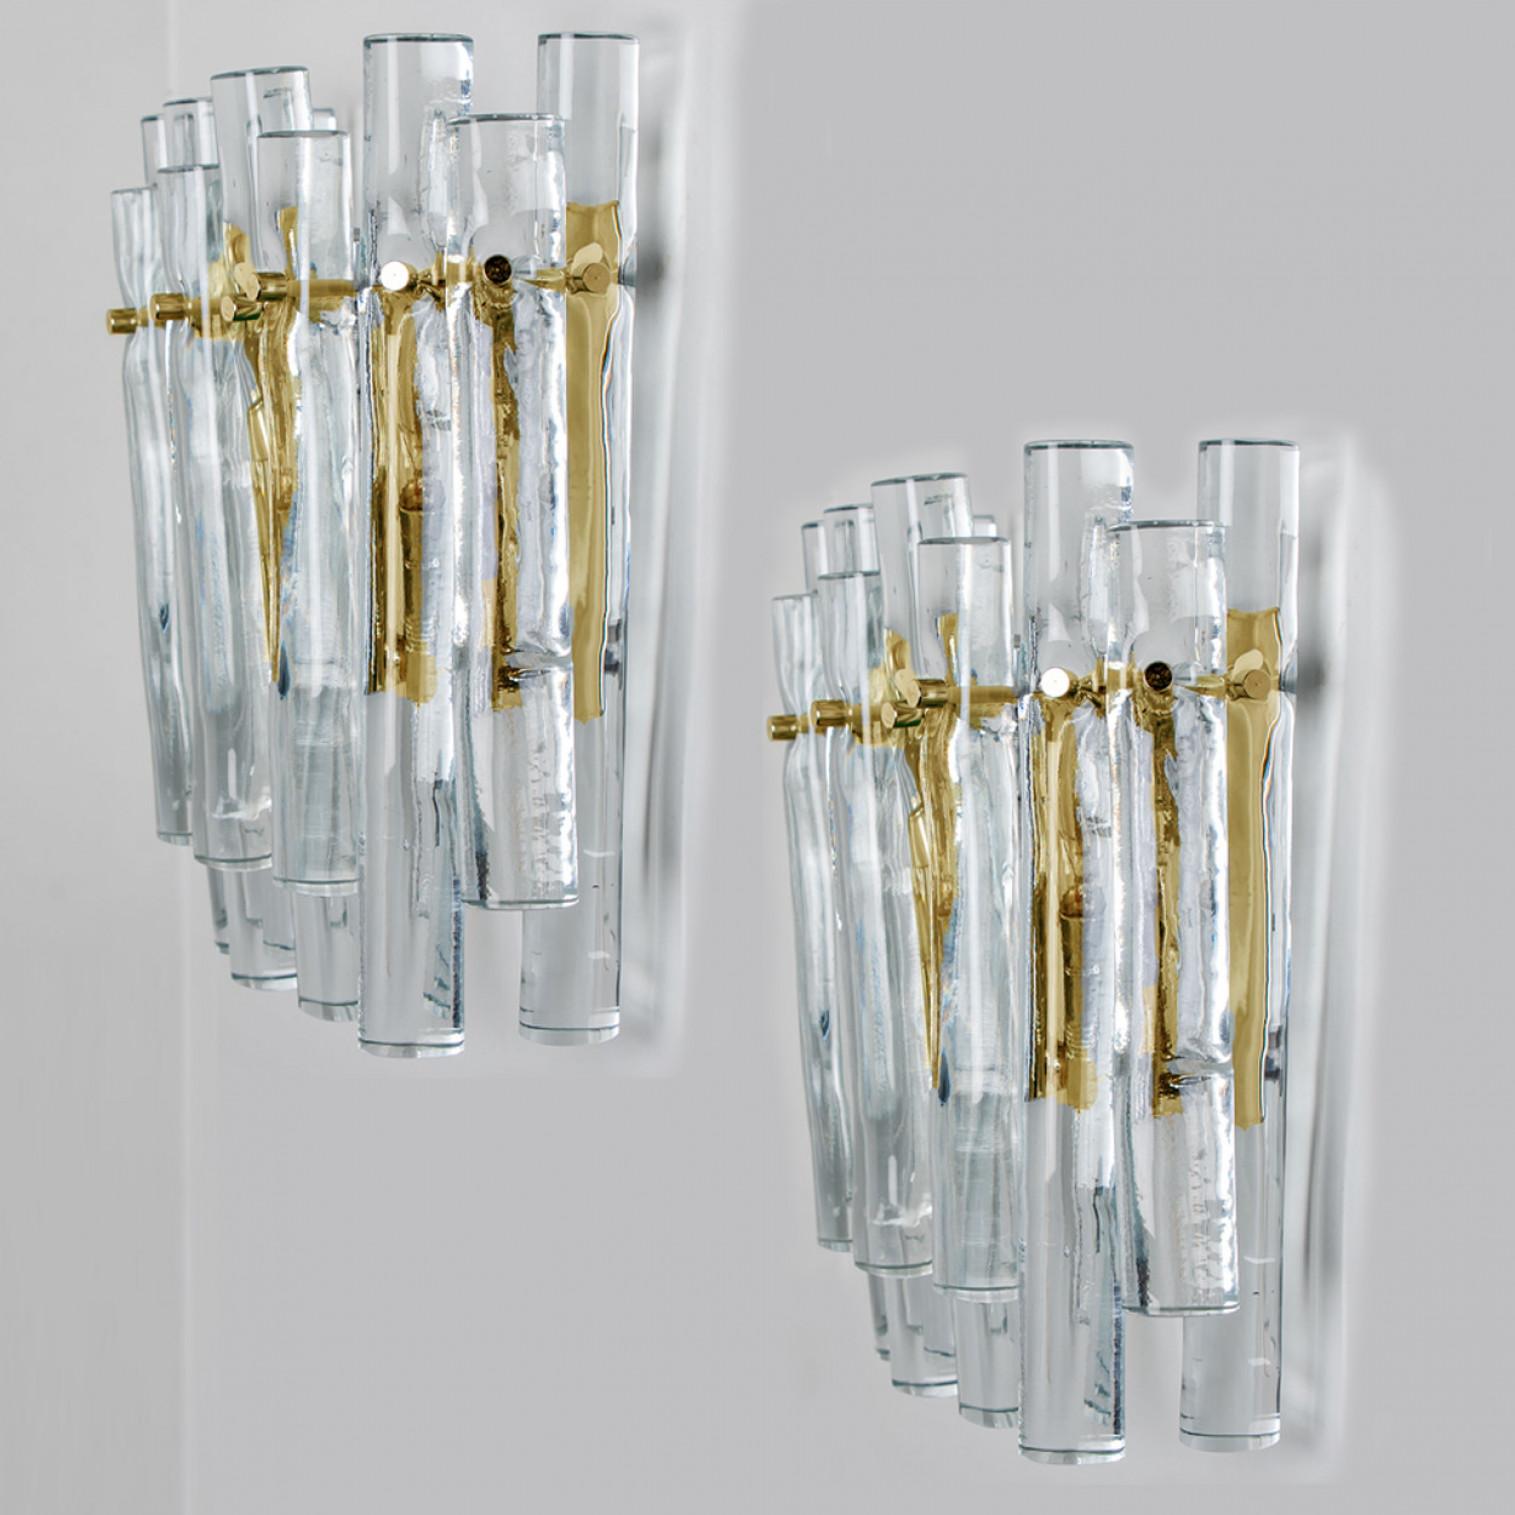 Wandleuchter aus Eisglas und Messing von dem berühmten Hersteller Kinkeldey, Deutschland, Europa. Sehr elegante Beleuchtungskörper, die zu allen Einrichtungsstilen passen. Die Kristalle sind sorgfältig so geschliffen, dass sie das Licht der